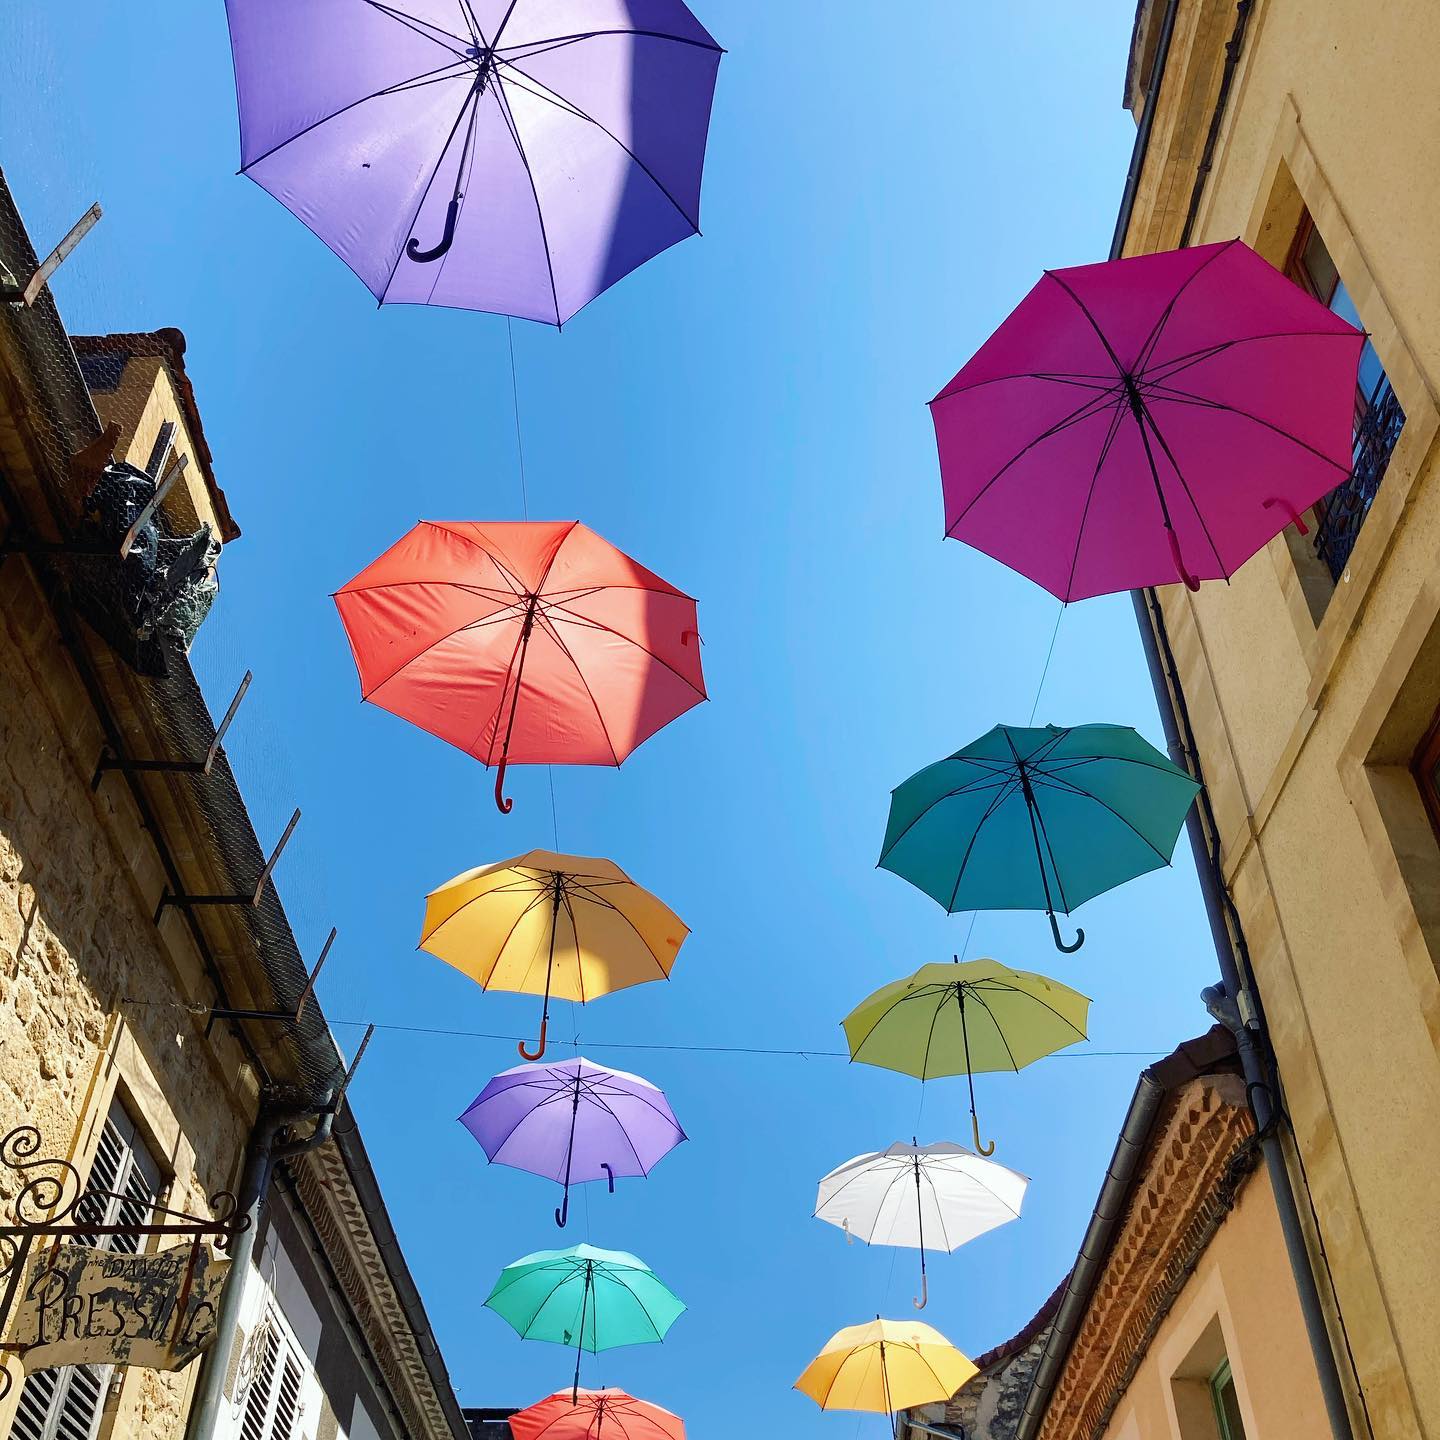 L’an dernier ces mêmes parapluies servaient contre la pluie ☔️ et cette année c’est bien contre le soleil ☀️ et pour mon plus grand plaisir ! Enfin un été à profiter des journées ensoleillées ! #excideuil #perigordvert #dordogne #parapluieexcideuil #rueauxparapluies